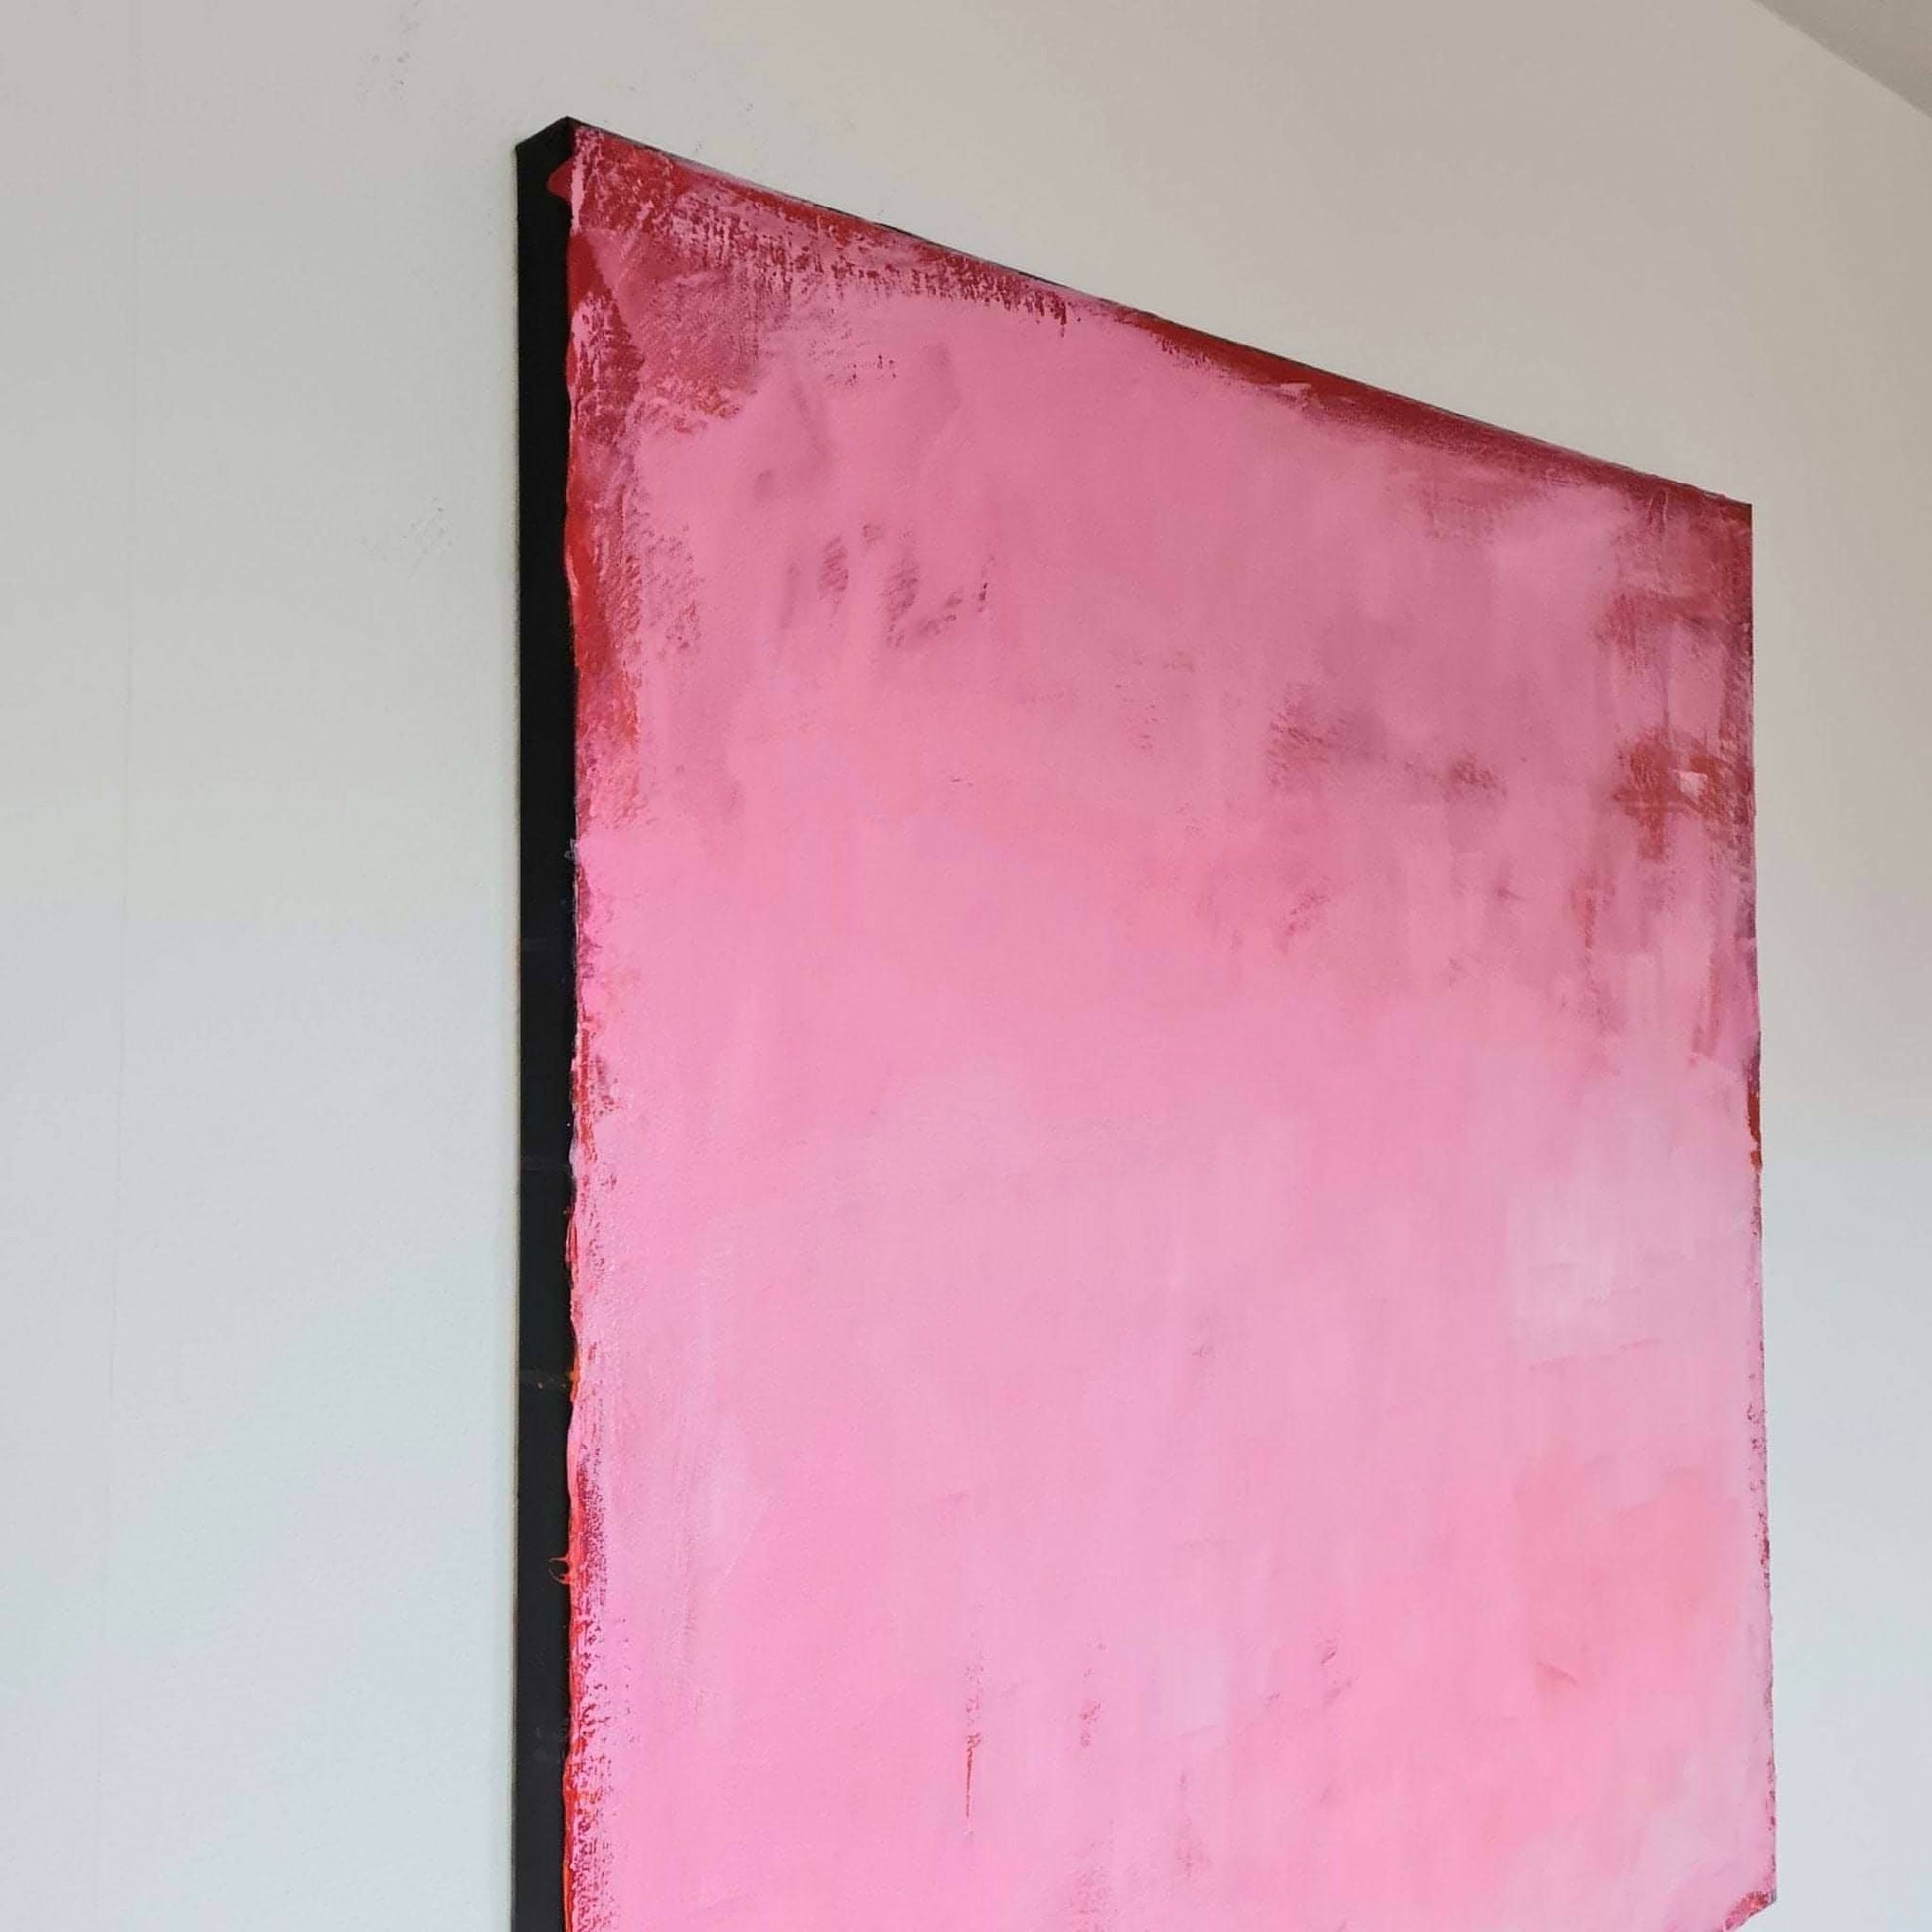 Abstrakte Kunst in Rosa, Lila und Pink - Inspirierendes Gemälde für kreative Gedanken Abstrakte Bilder & moderne Auftragsmalerei, abstrakte große bilder online kaufen, Auftrags Malere